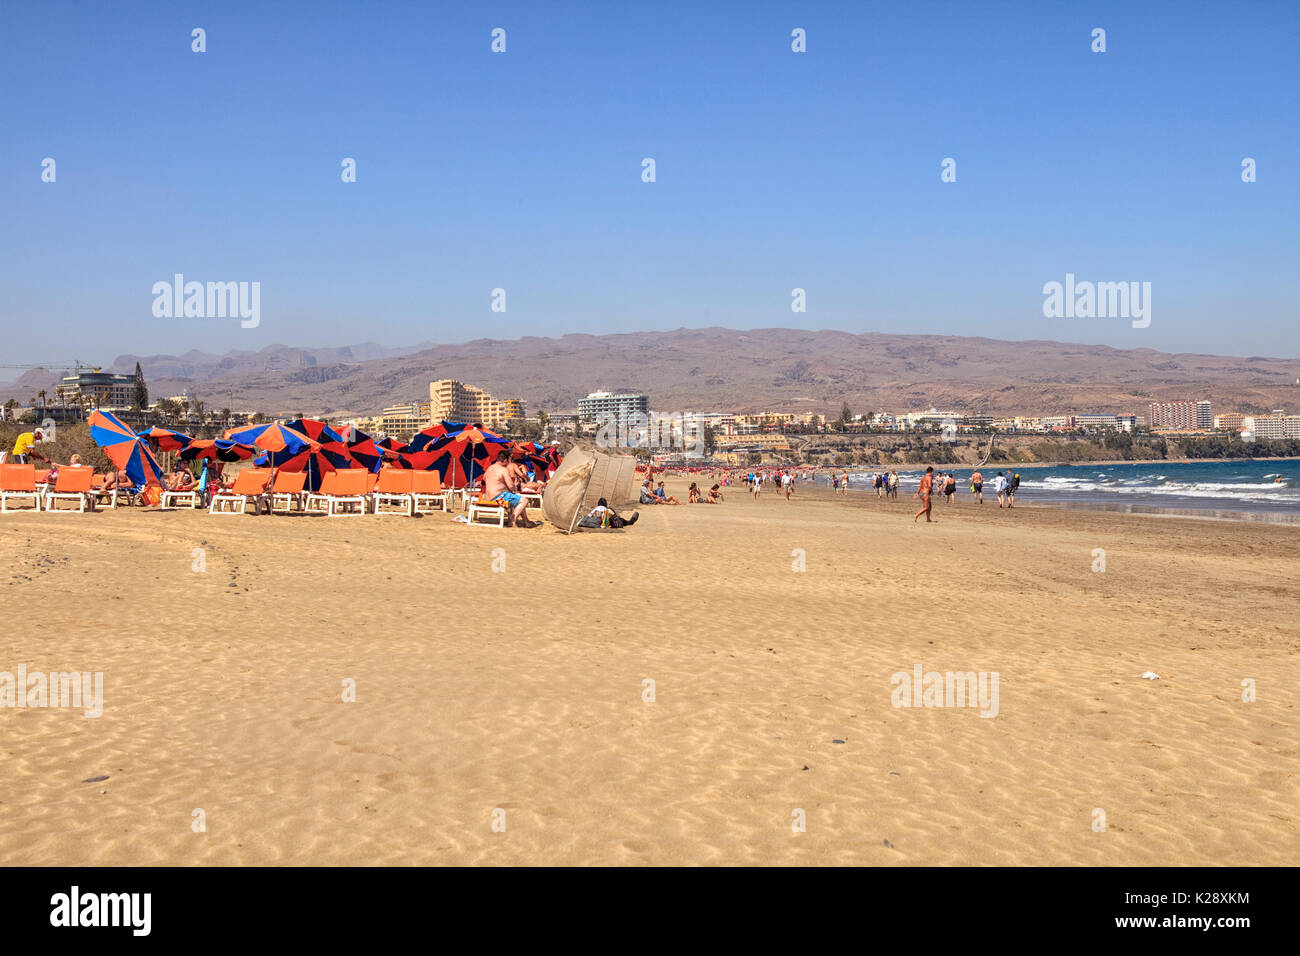 PLAYA DEL INGLES, GRAN CANARIA - 3. März: Menschen auf den Strand und die Hotels im Hintergrund am Playa del Ingles auf Gran Canaria am 3. März 2012. Playa I Stockfoto